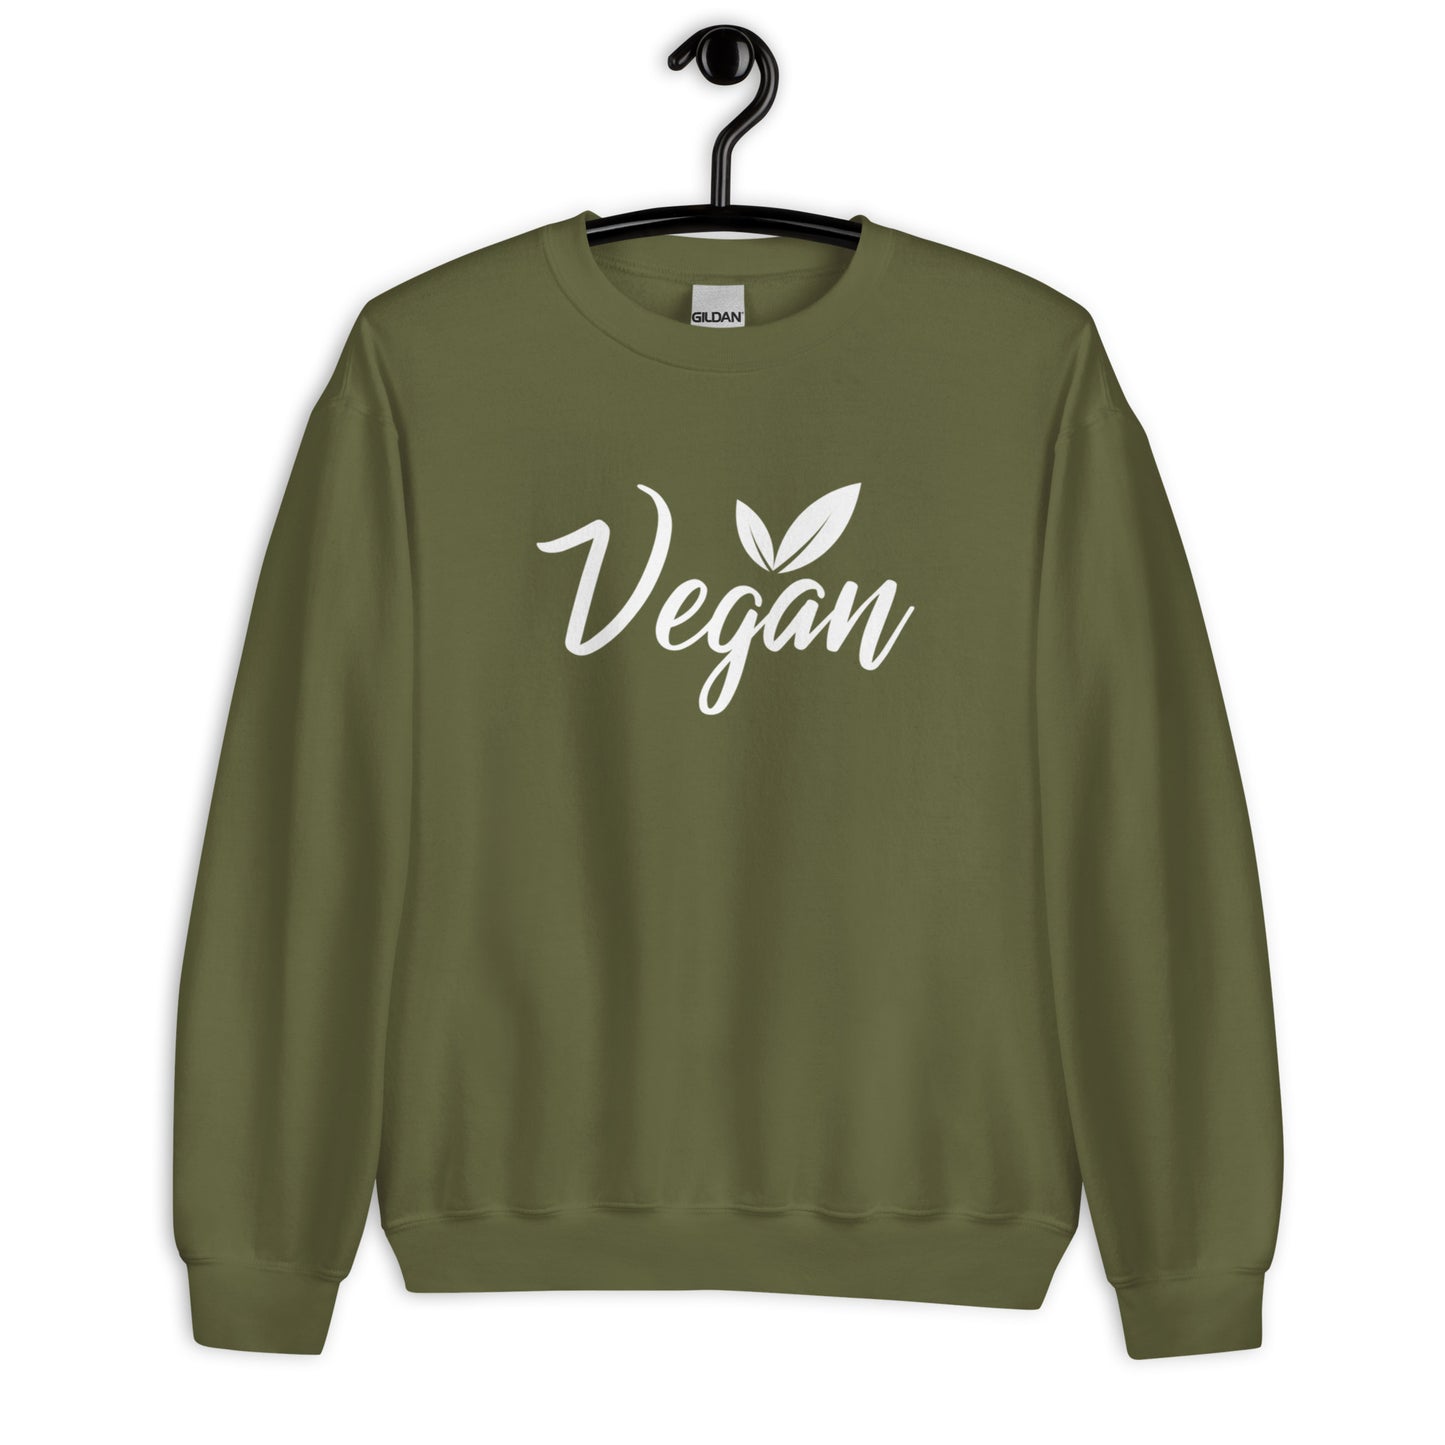 Vegan - Sweatshirt